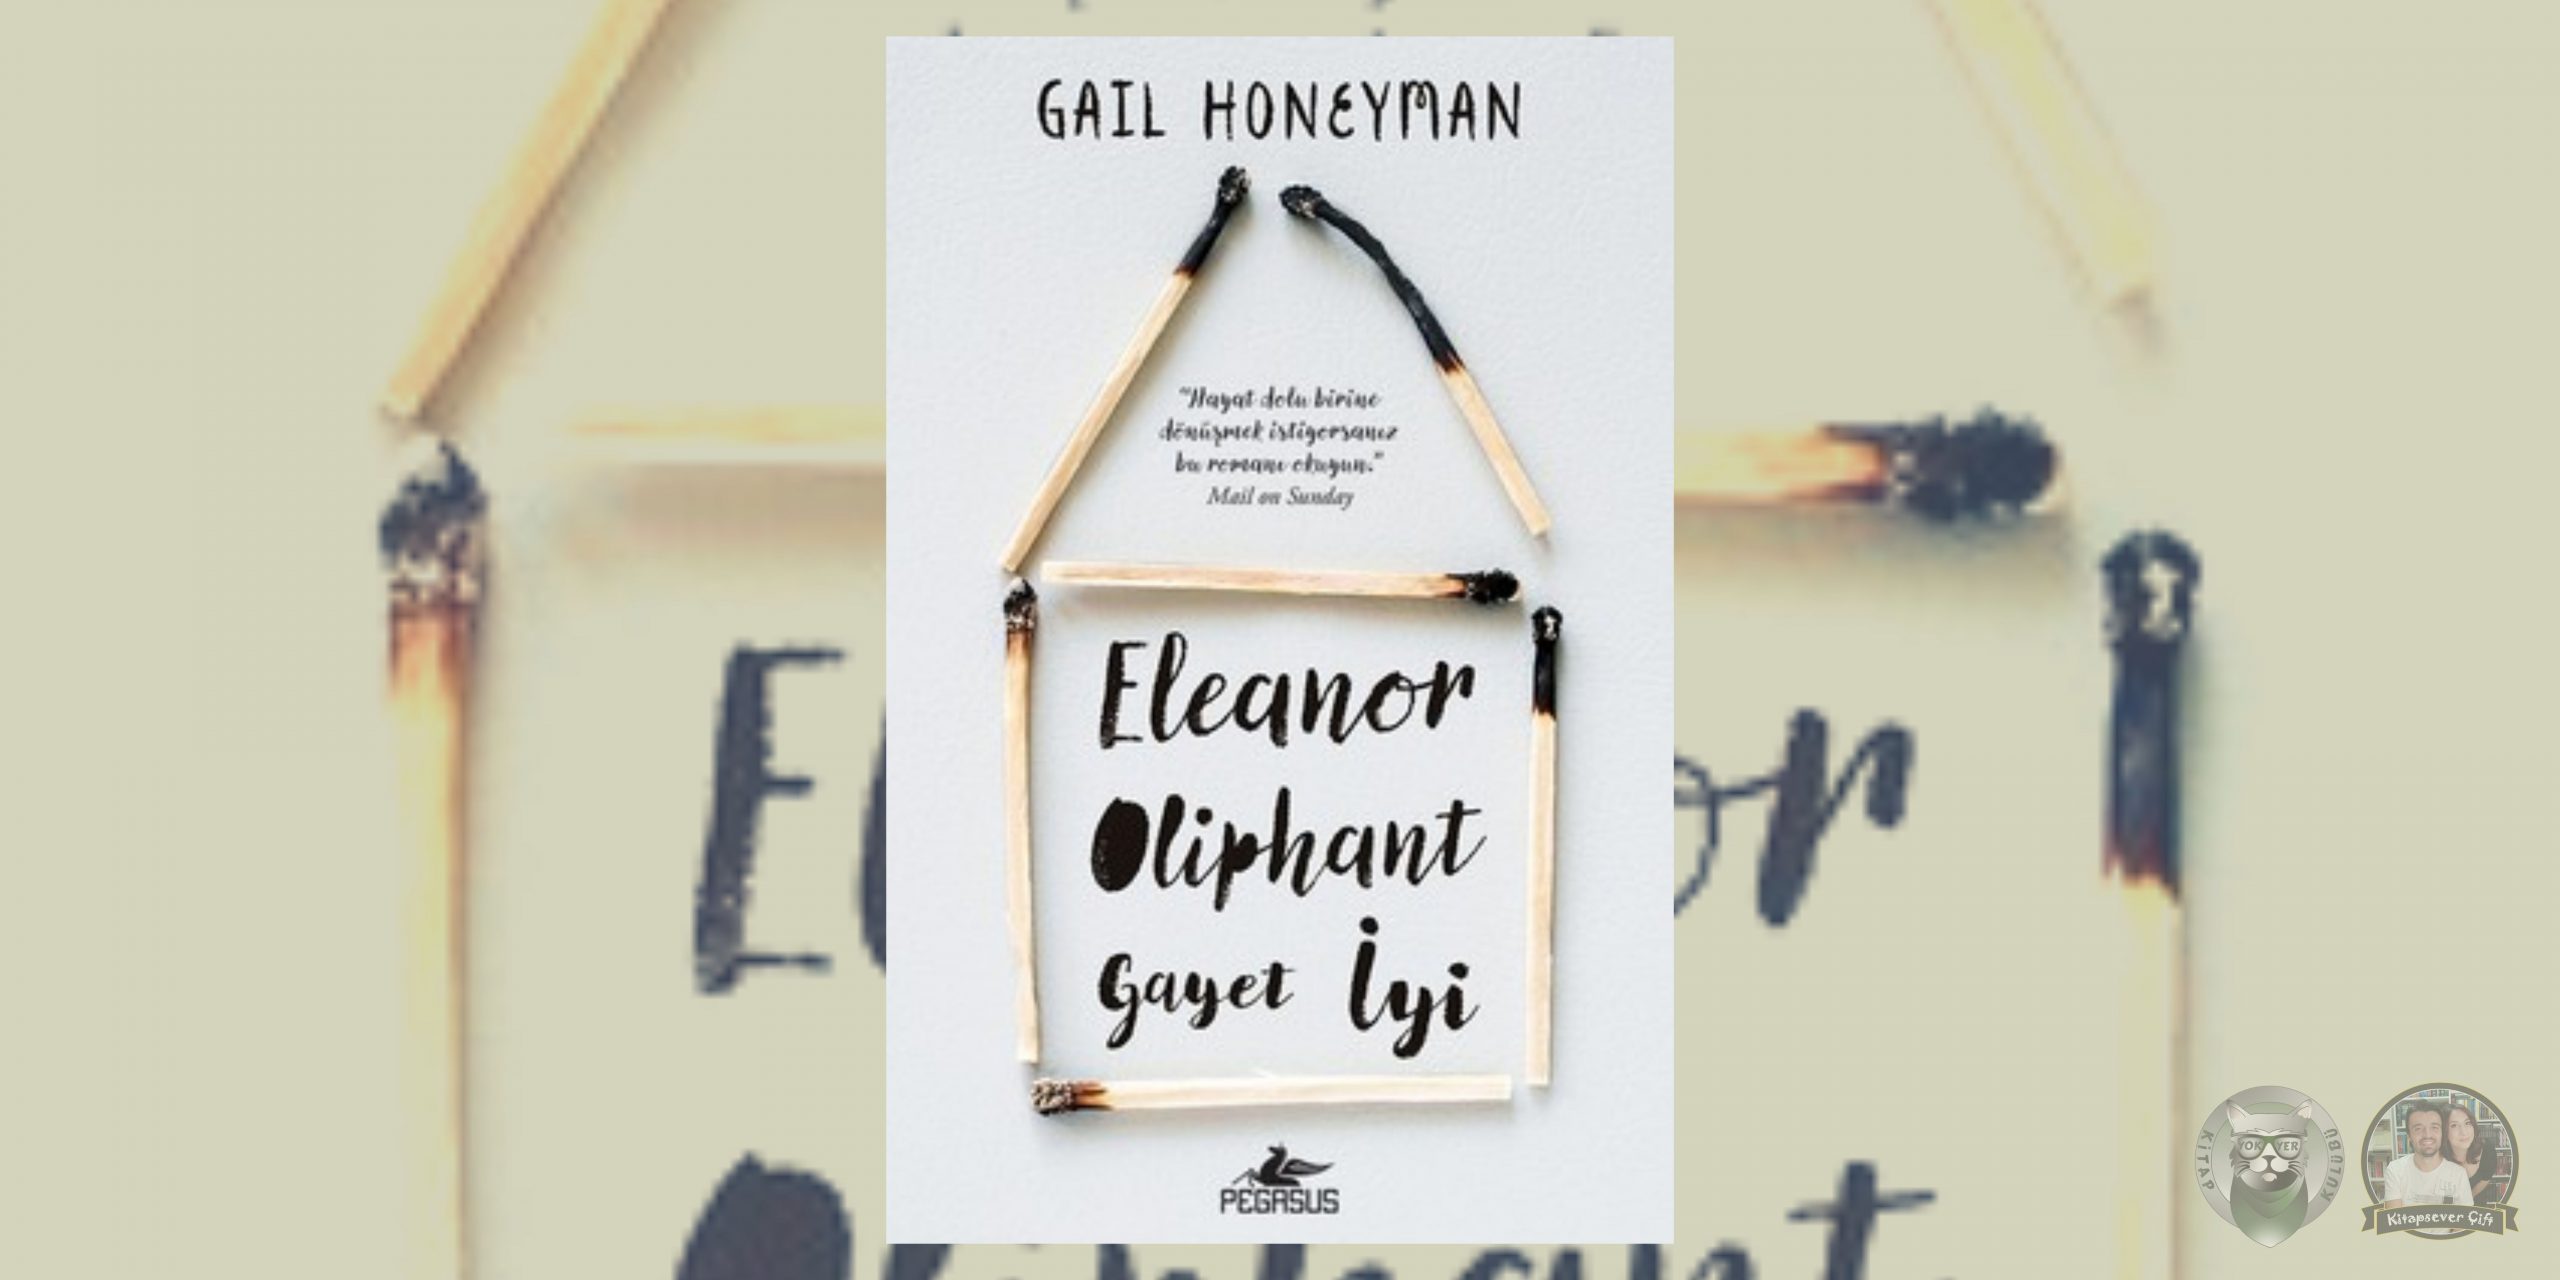 sessiz kalma! hayranlarına 13 kitap önerisi 9 – eleanor oliphant gayet iyi scaled